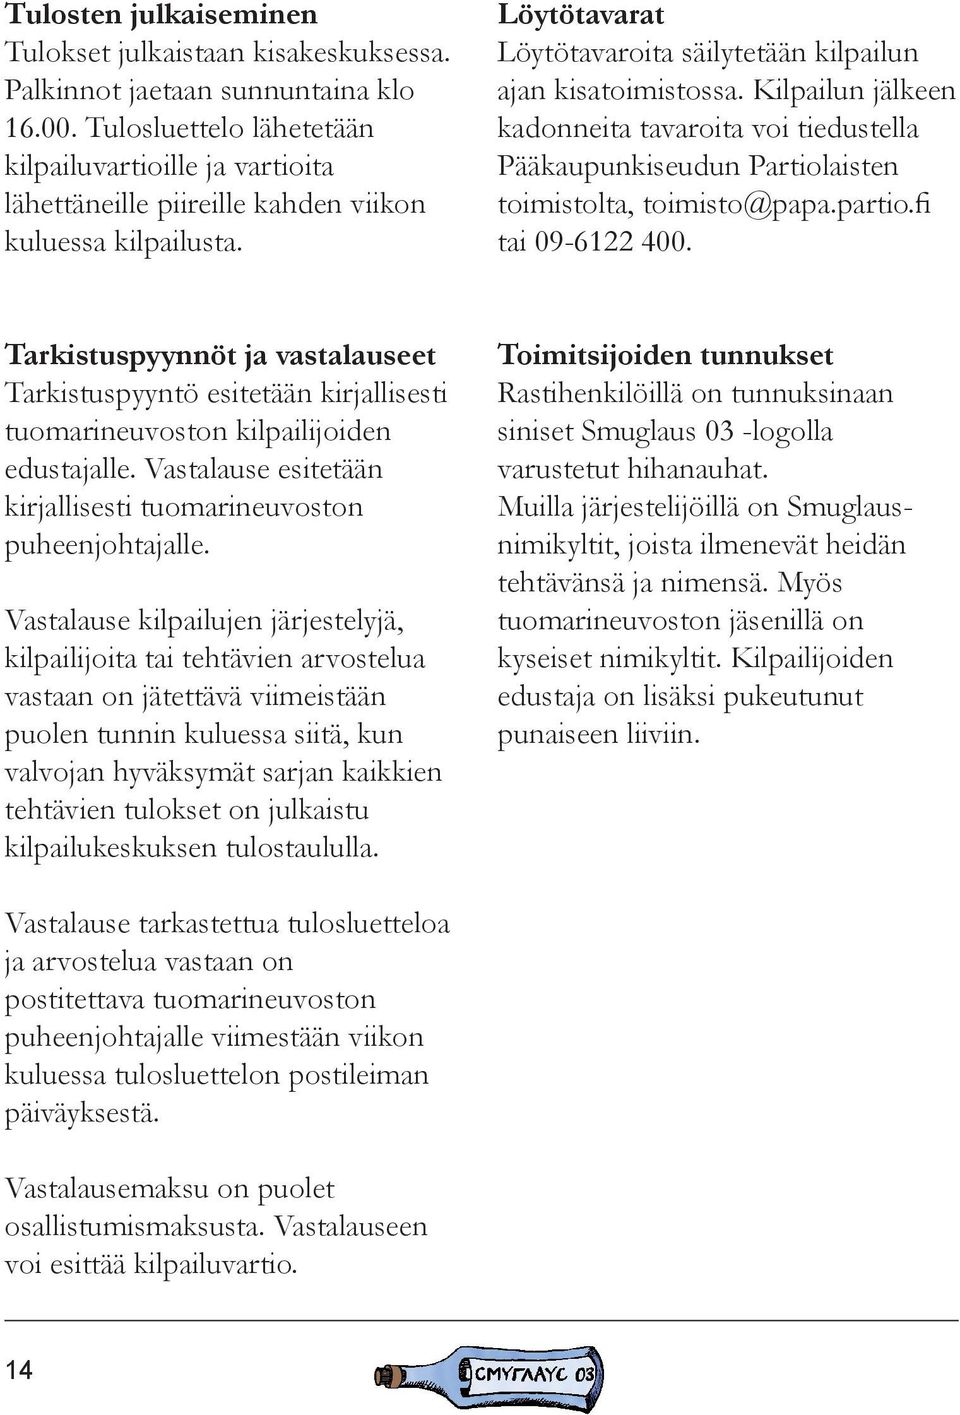 Kilpailun jälkeen kadonneita tavaroita voi tiedustella Pääkaupunkiseudun Partiolaisten toimistolta, toimisto@papa.partio.fi tai 09-6122 400.